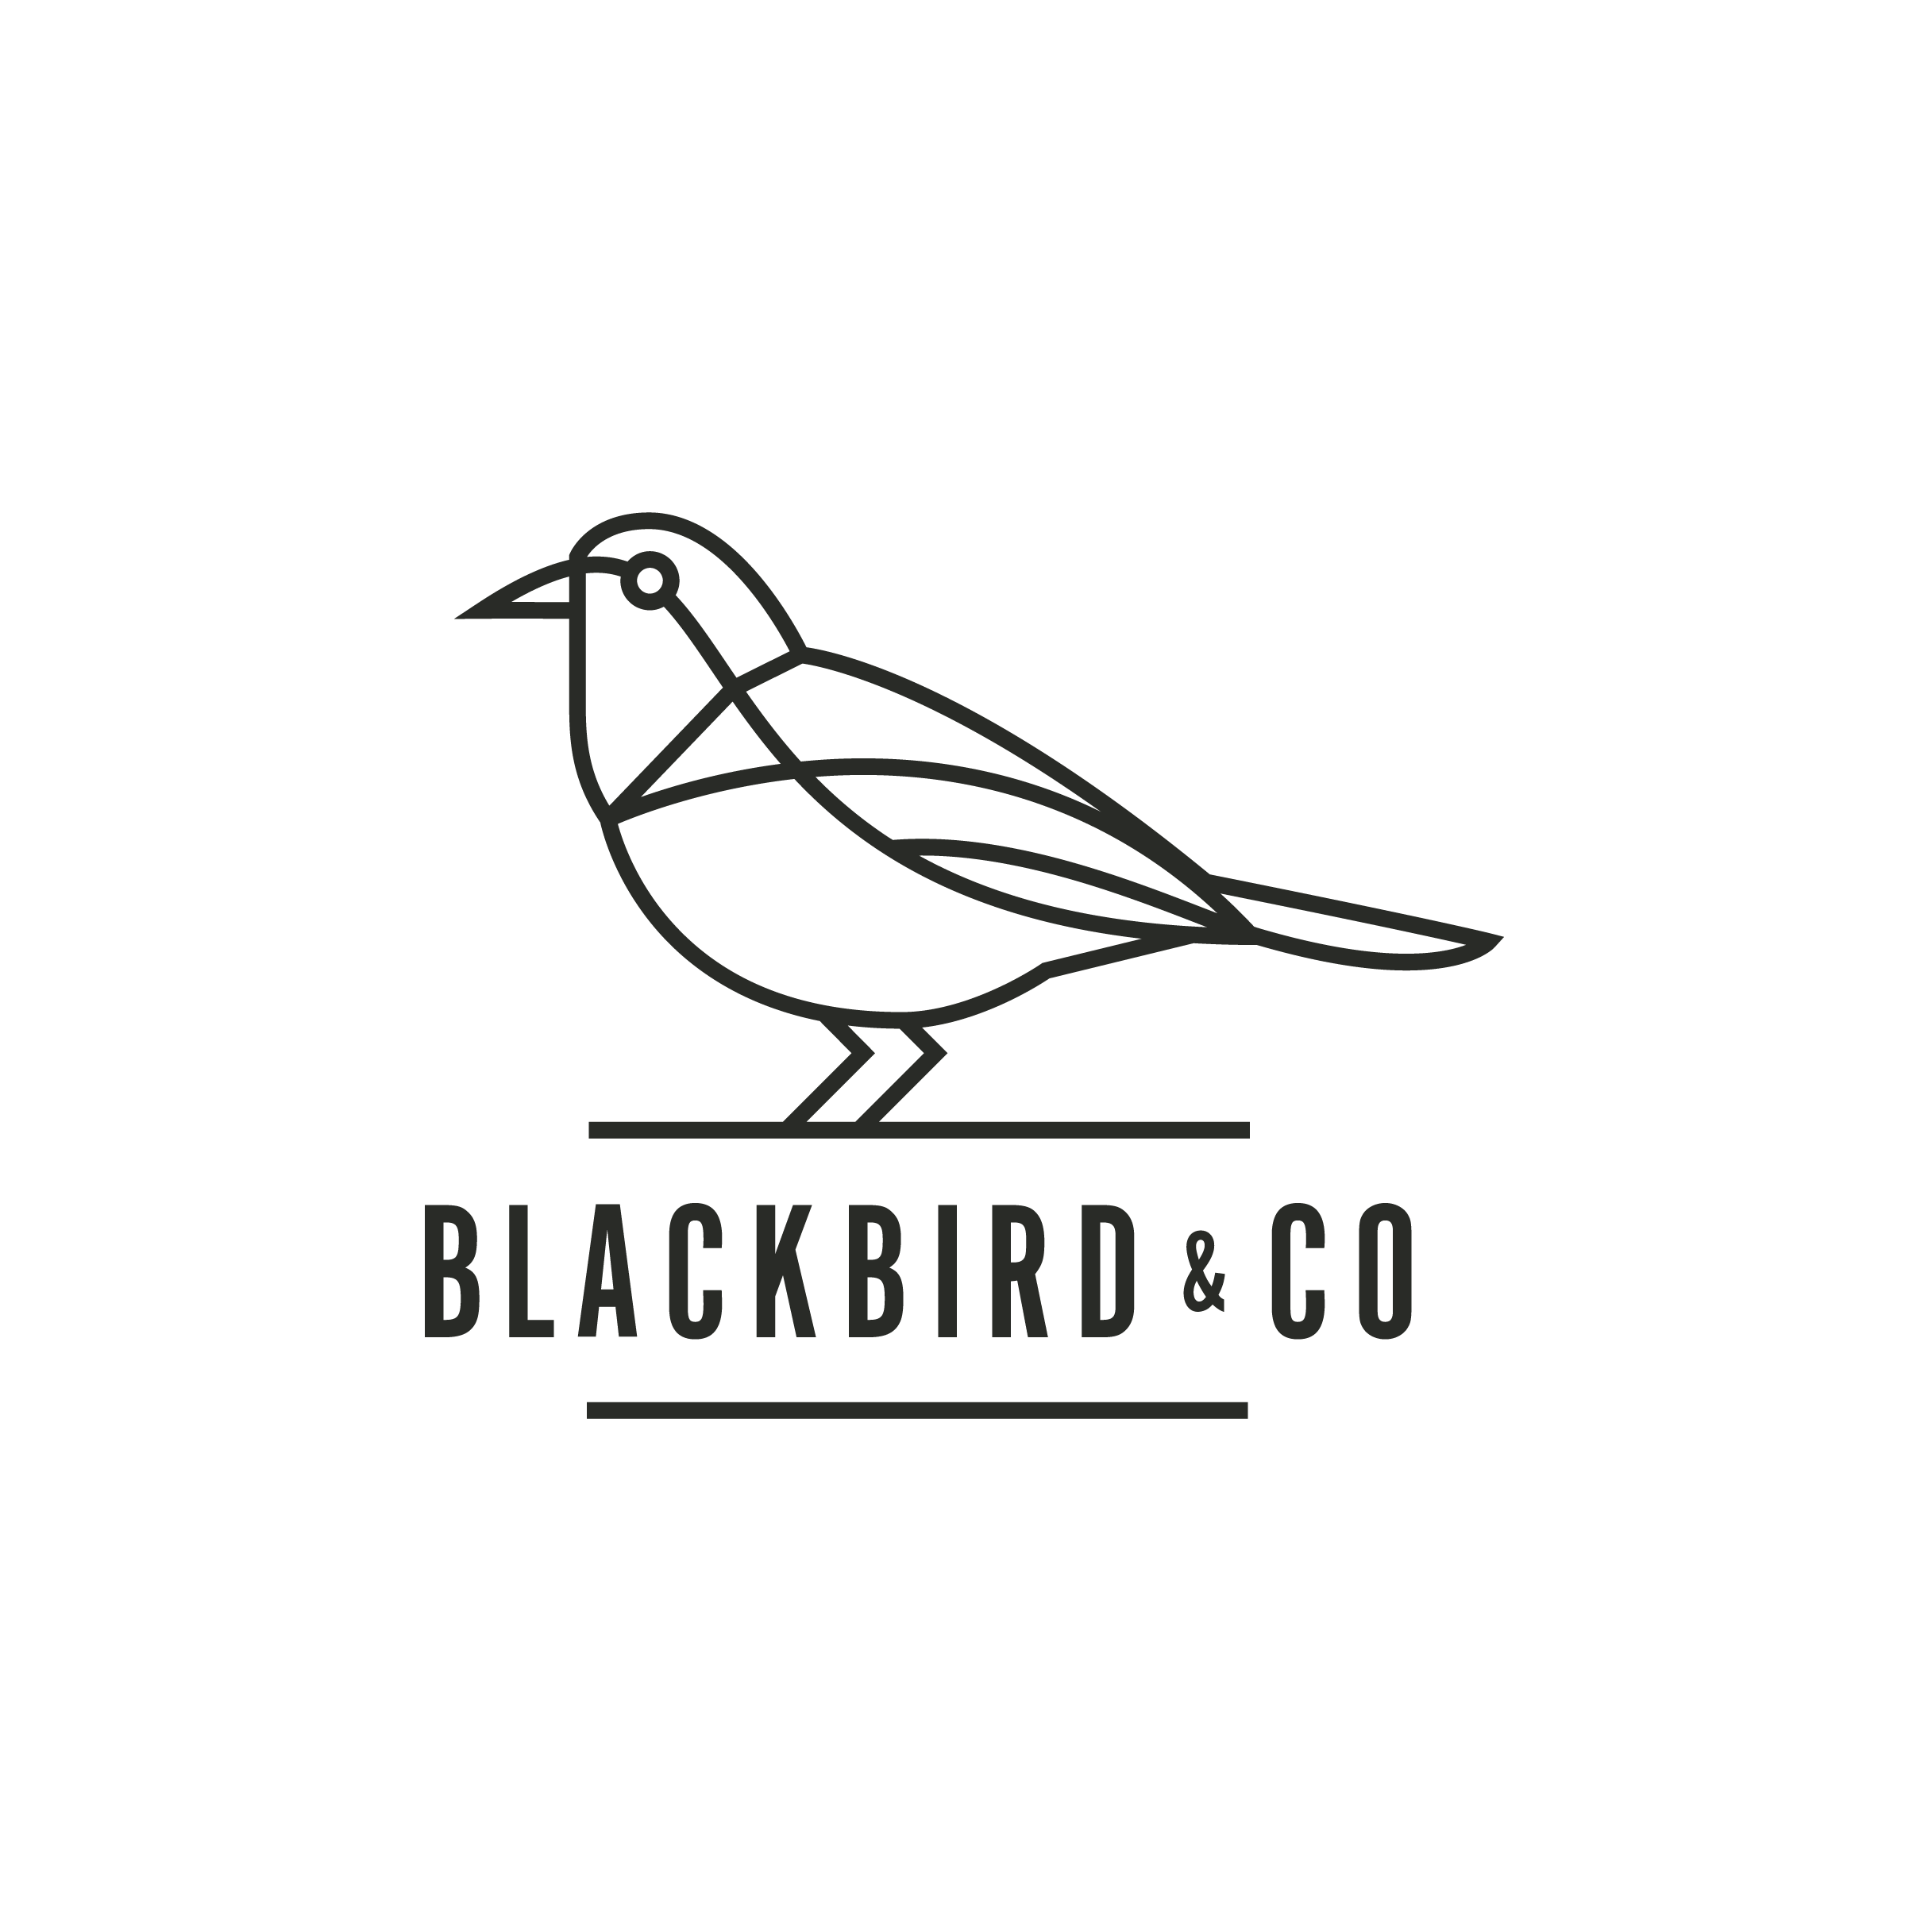 Blackbird & Co